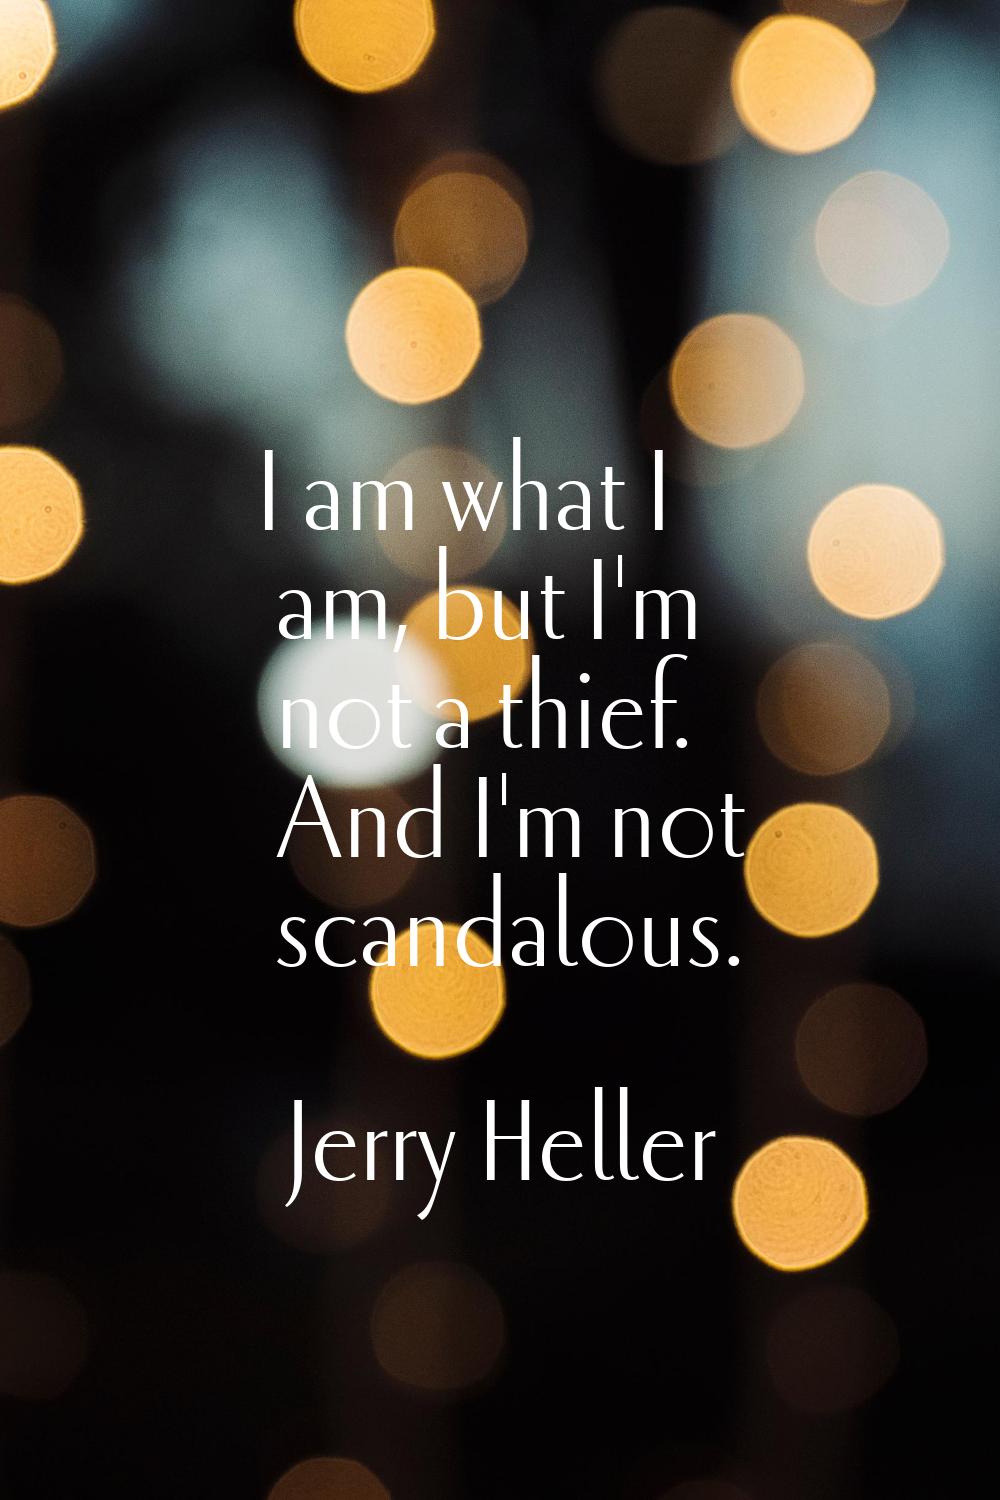 I am what I am, but I'm not a thief. And I'm not scandalous.